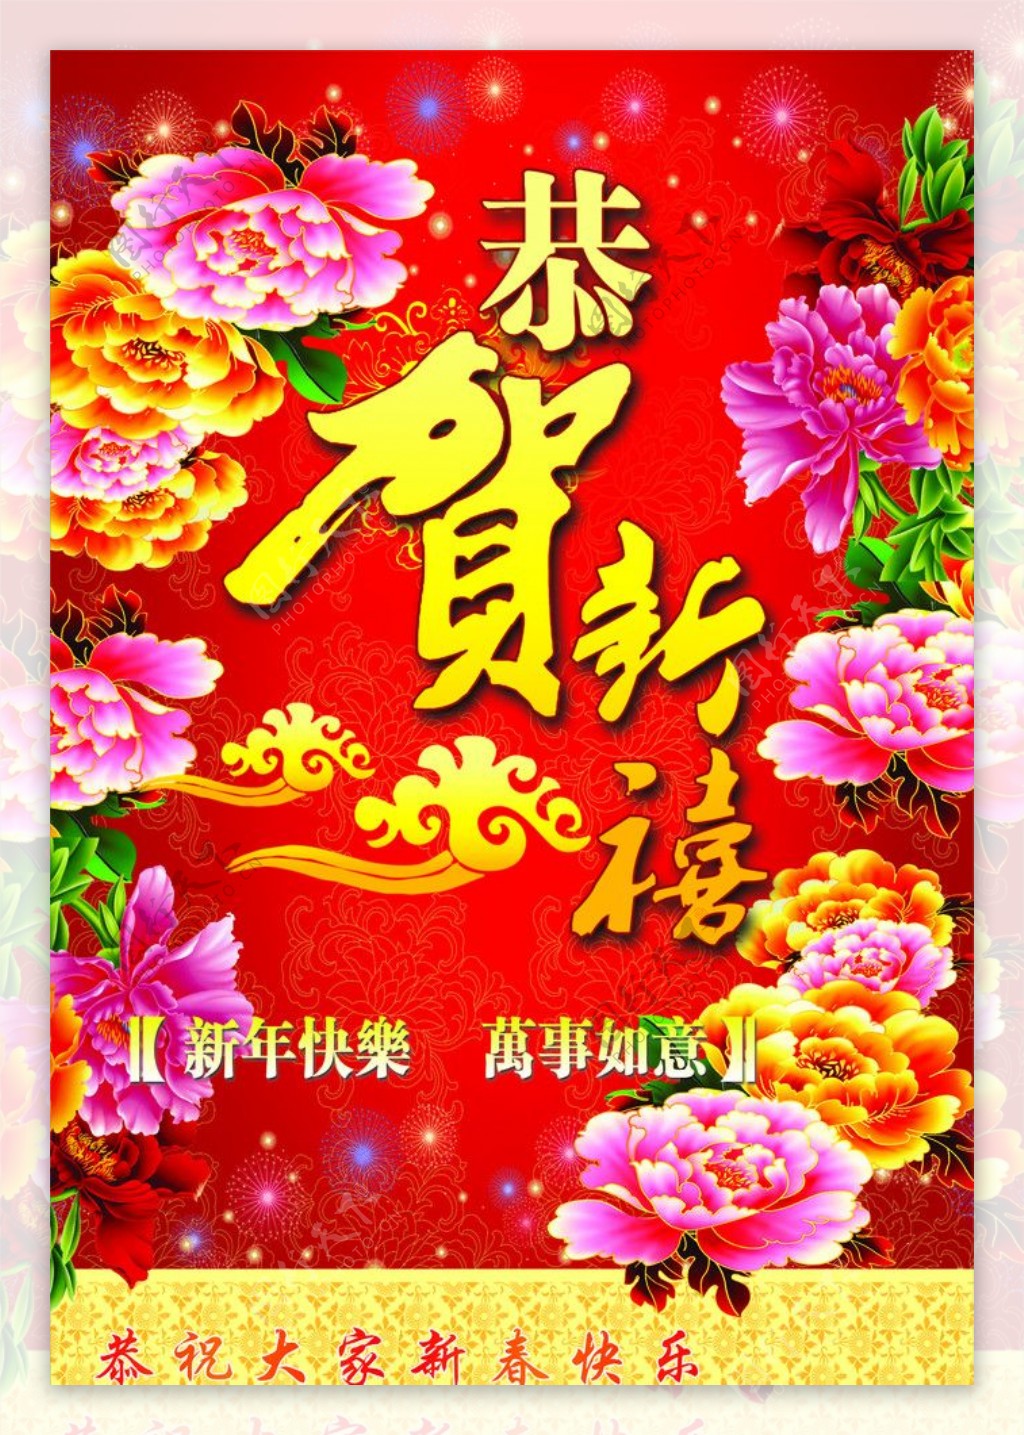 2012恭祝新春快乐